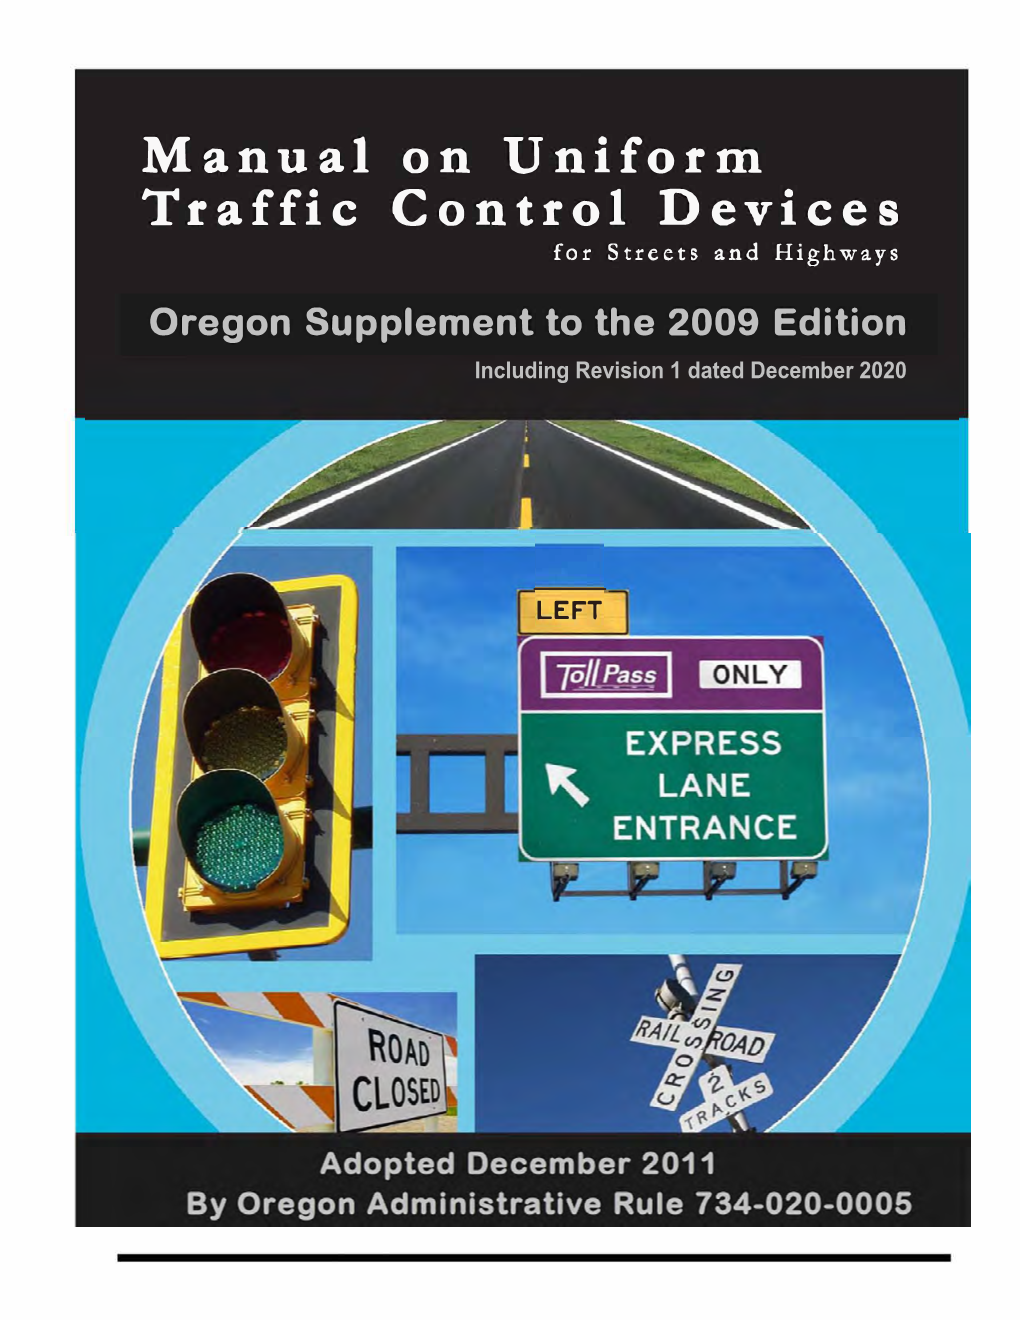 Manual Uniform Traffic Control Devices (MUTCD)